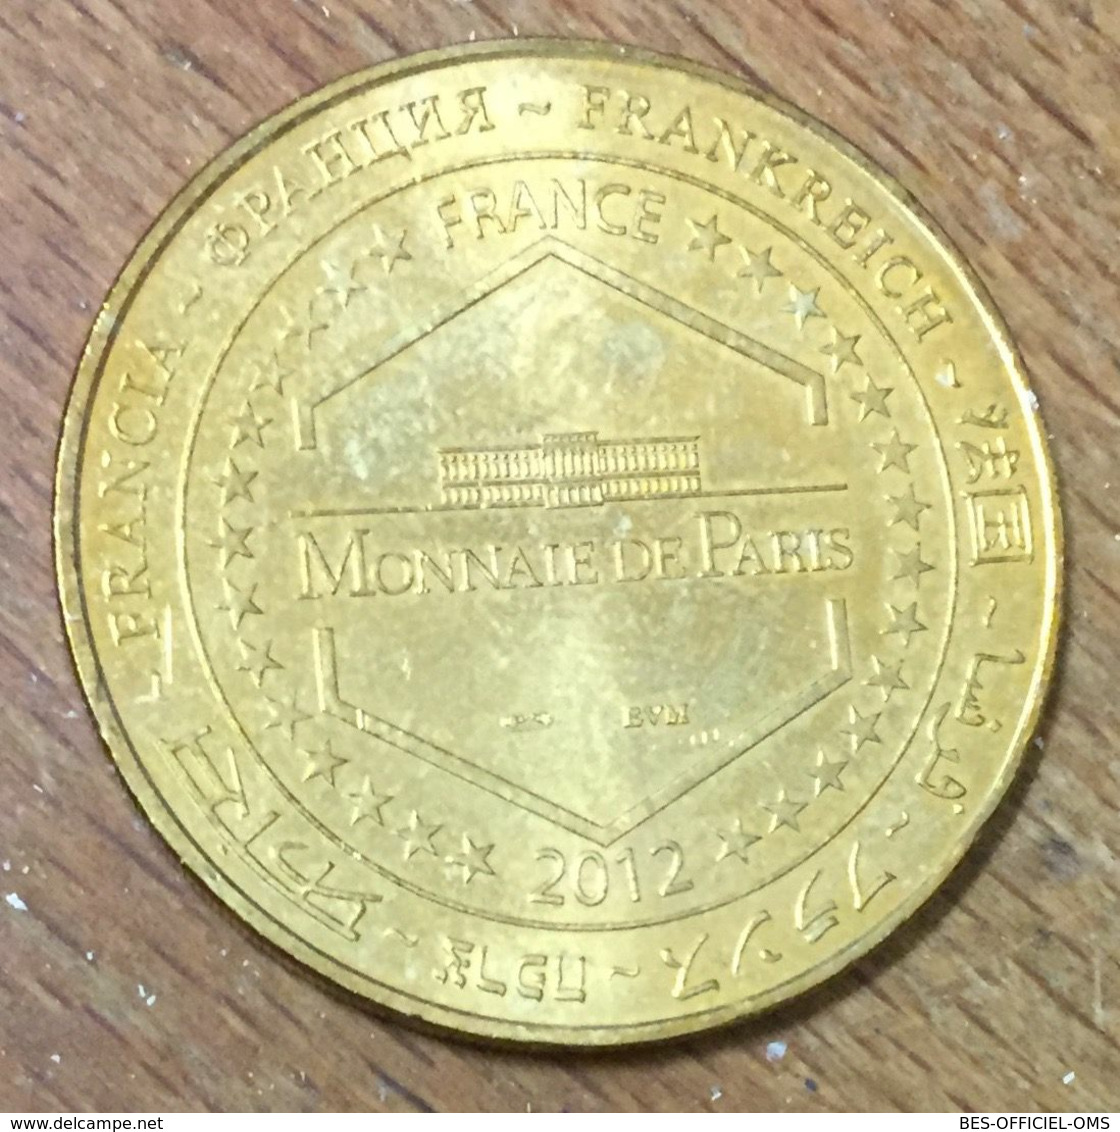 77 DISNEYLAND PARIS N°29 MICKEY 2012 DISNEY MDP MÉDAILLE SOUVENIR MONNAIE DE PARIS JETON TOURISTIQUE MEDALS COINS TOKENS - 2012